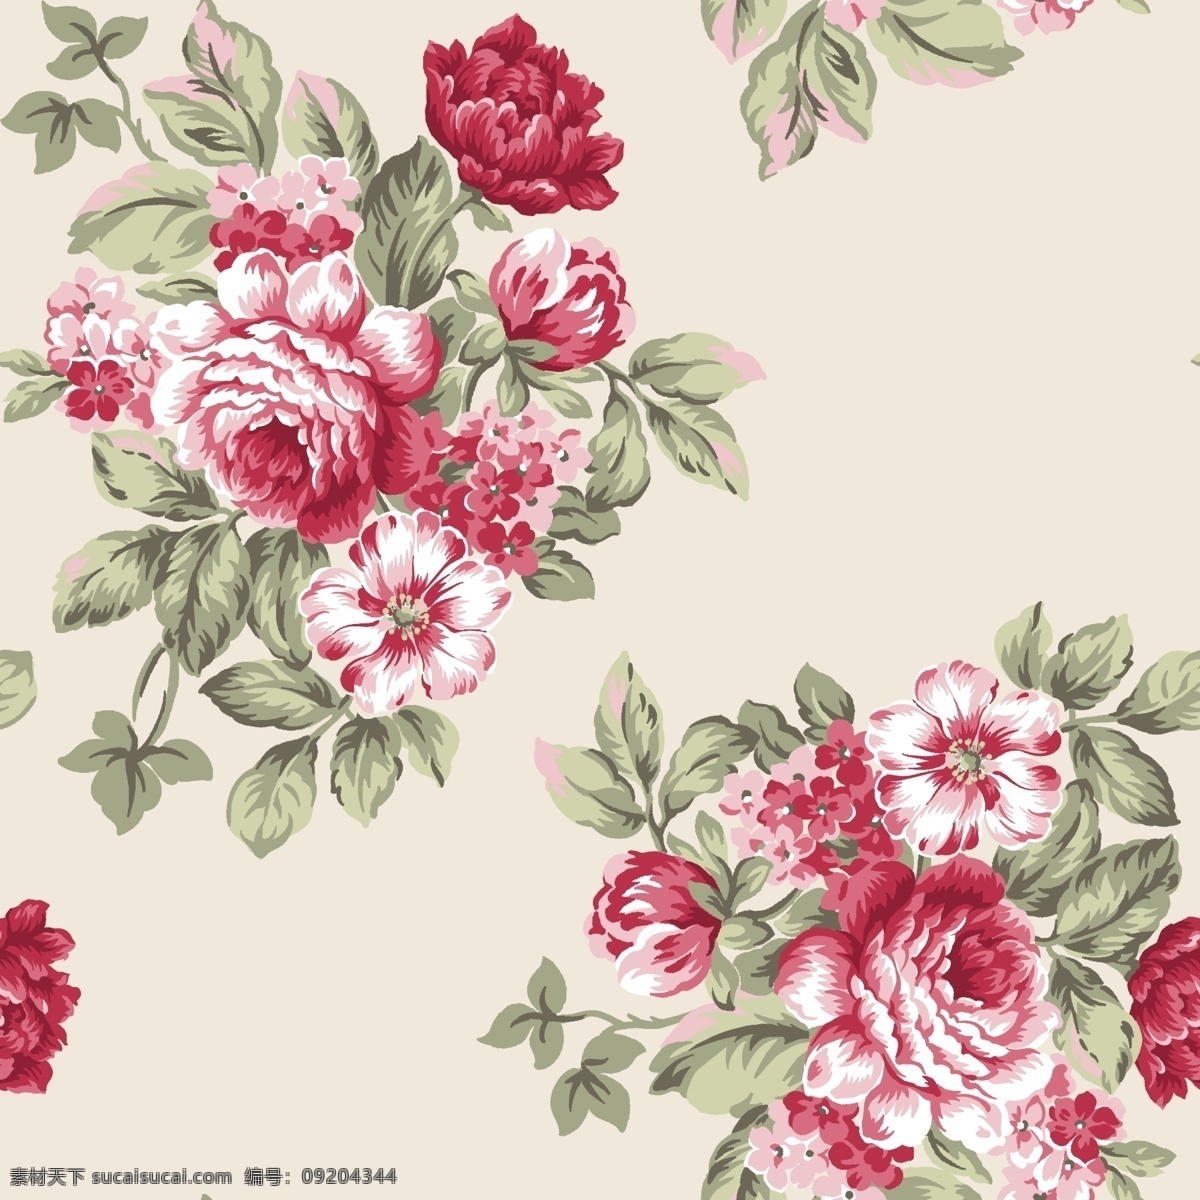 大花 抽象花 手绘花 中国画花卉 水彩花卉 创意花卉 印花素材 高清 服装图案素材 家纺图案素材